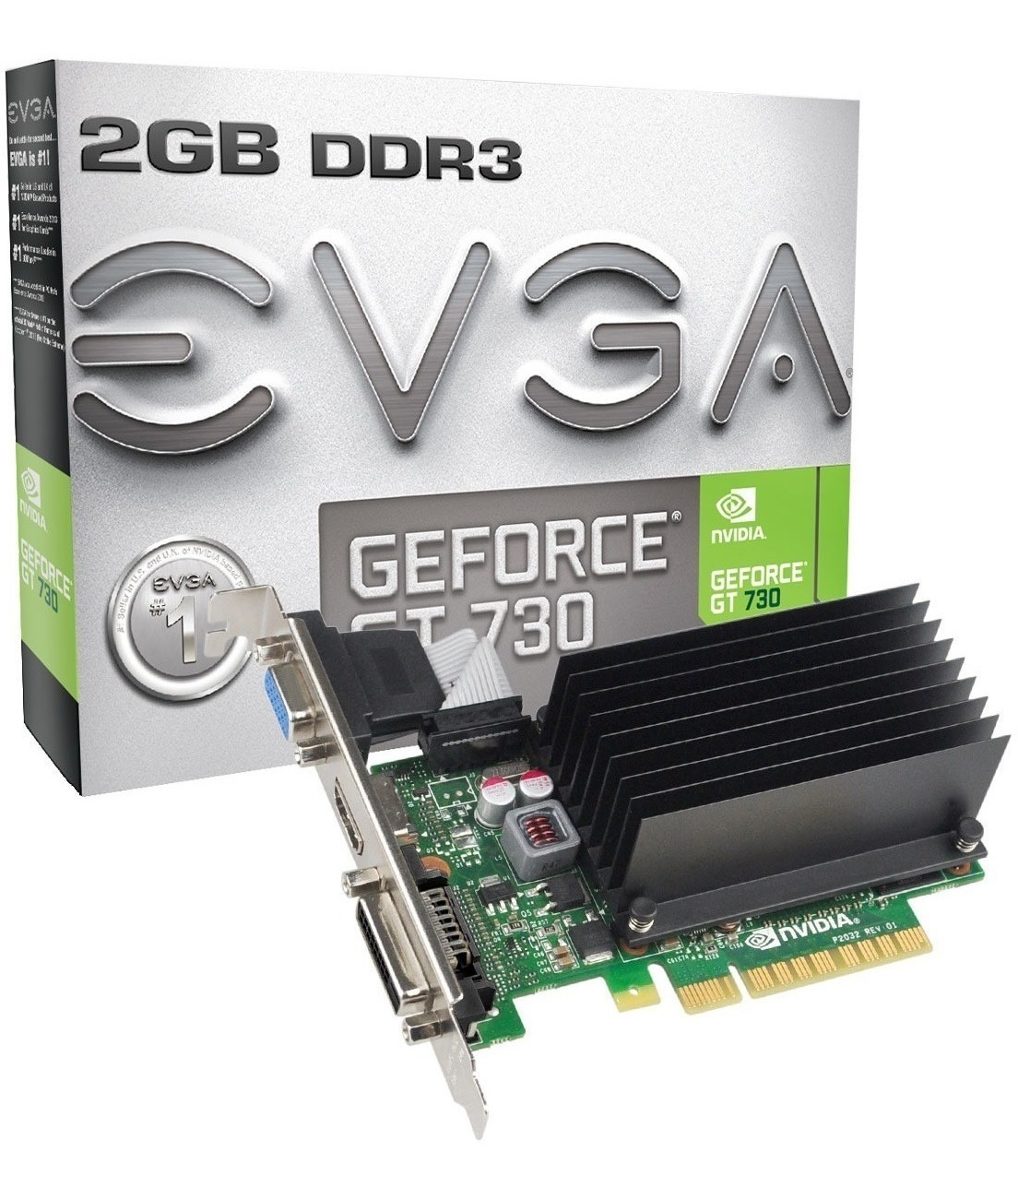 Geforce 730 ddr3. Gt730 4gb 128bit ddr3. NVIDIA GEFORCE 730 2gb. NVIDIA GEFORCE gt 730 2gb ddr3 128bit. NVIDIA gt 730 4gb.